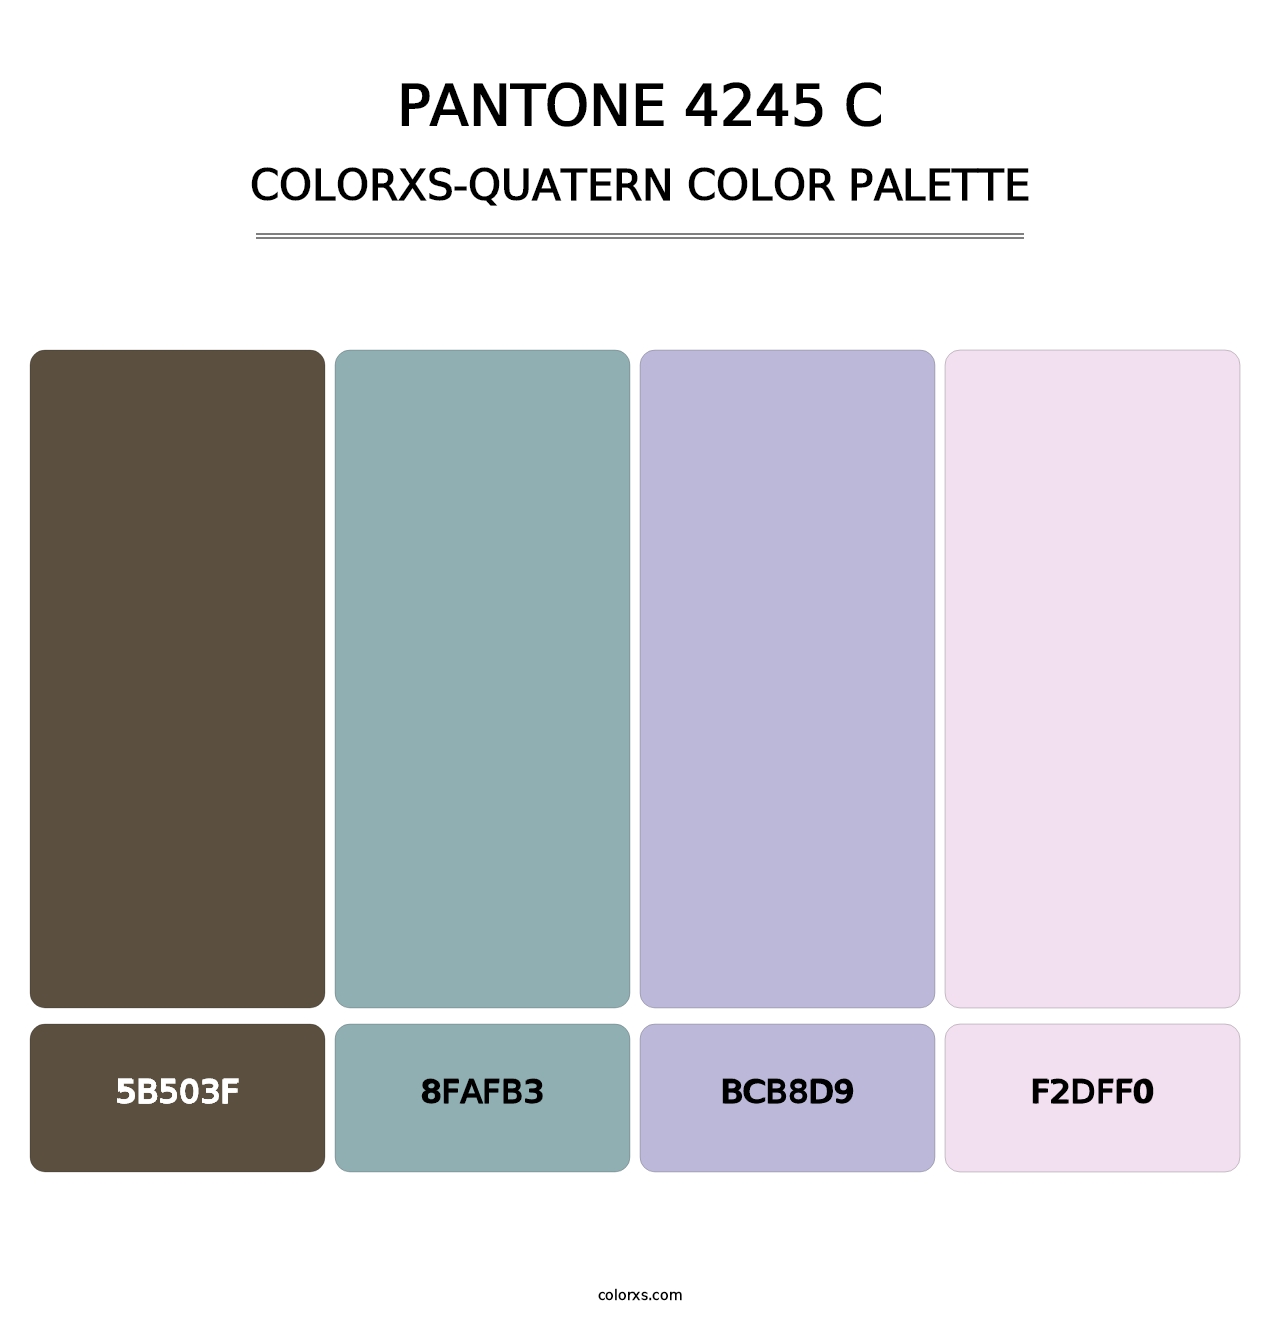 PANTONE 4245 C - Colorxs Quatern Palette